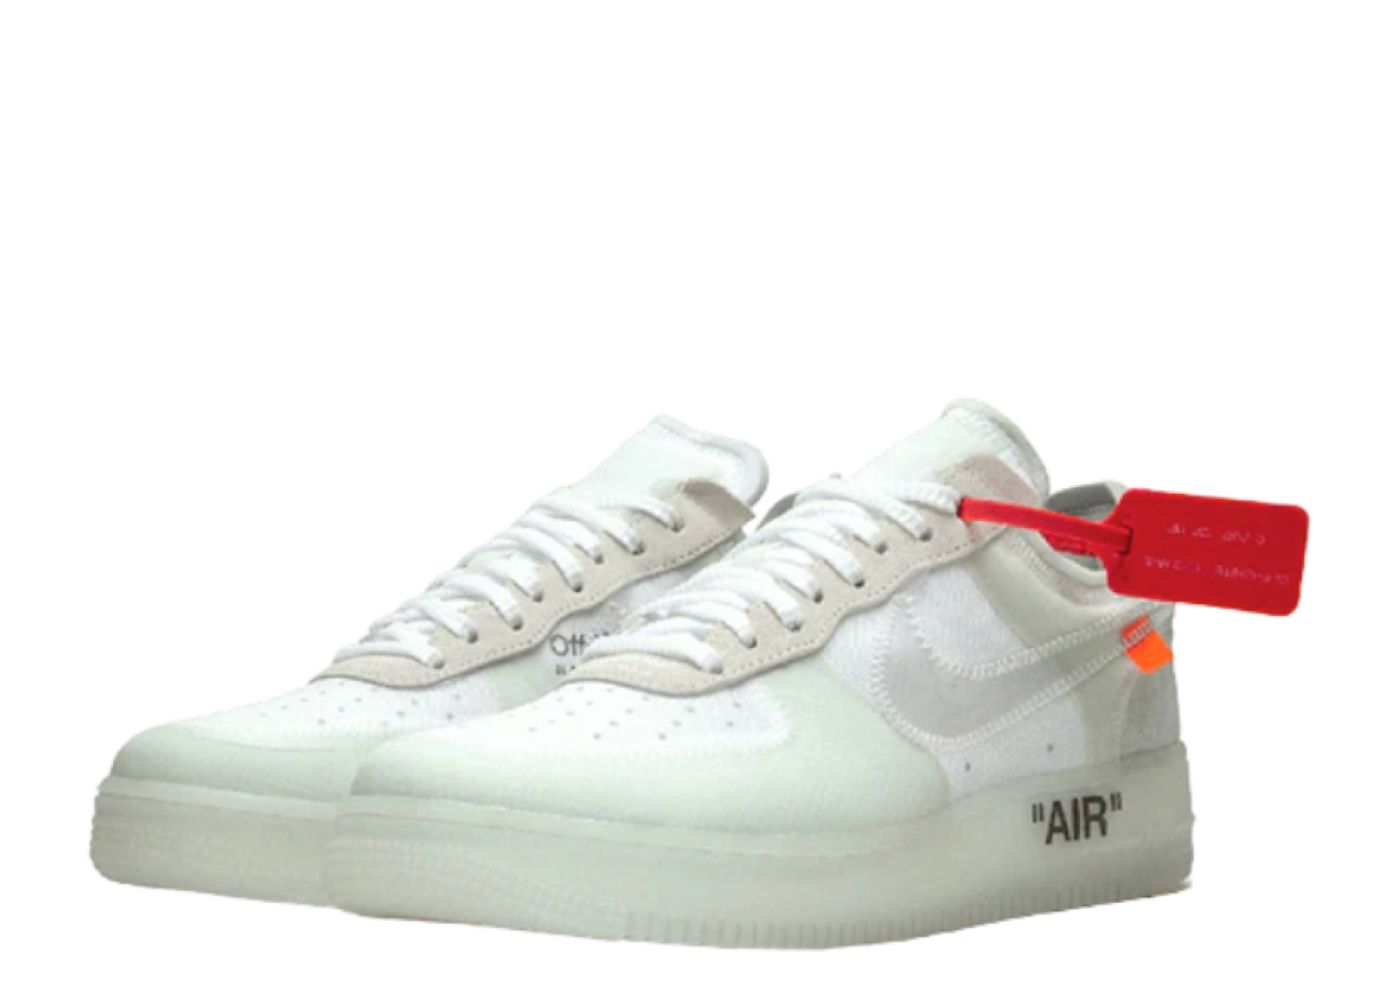 086 - Purchase Virgil Abloh x Nike Мужские кроссовки nike air